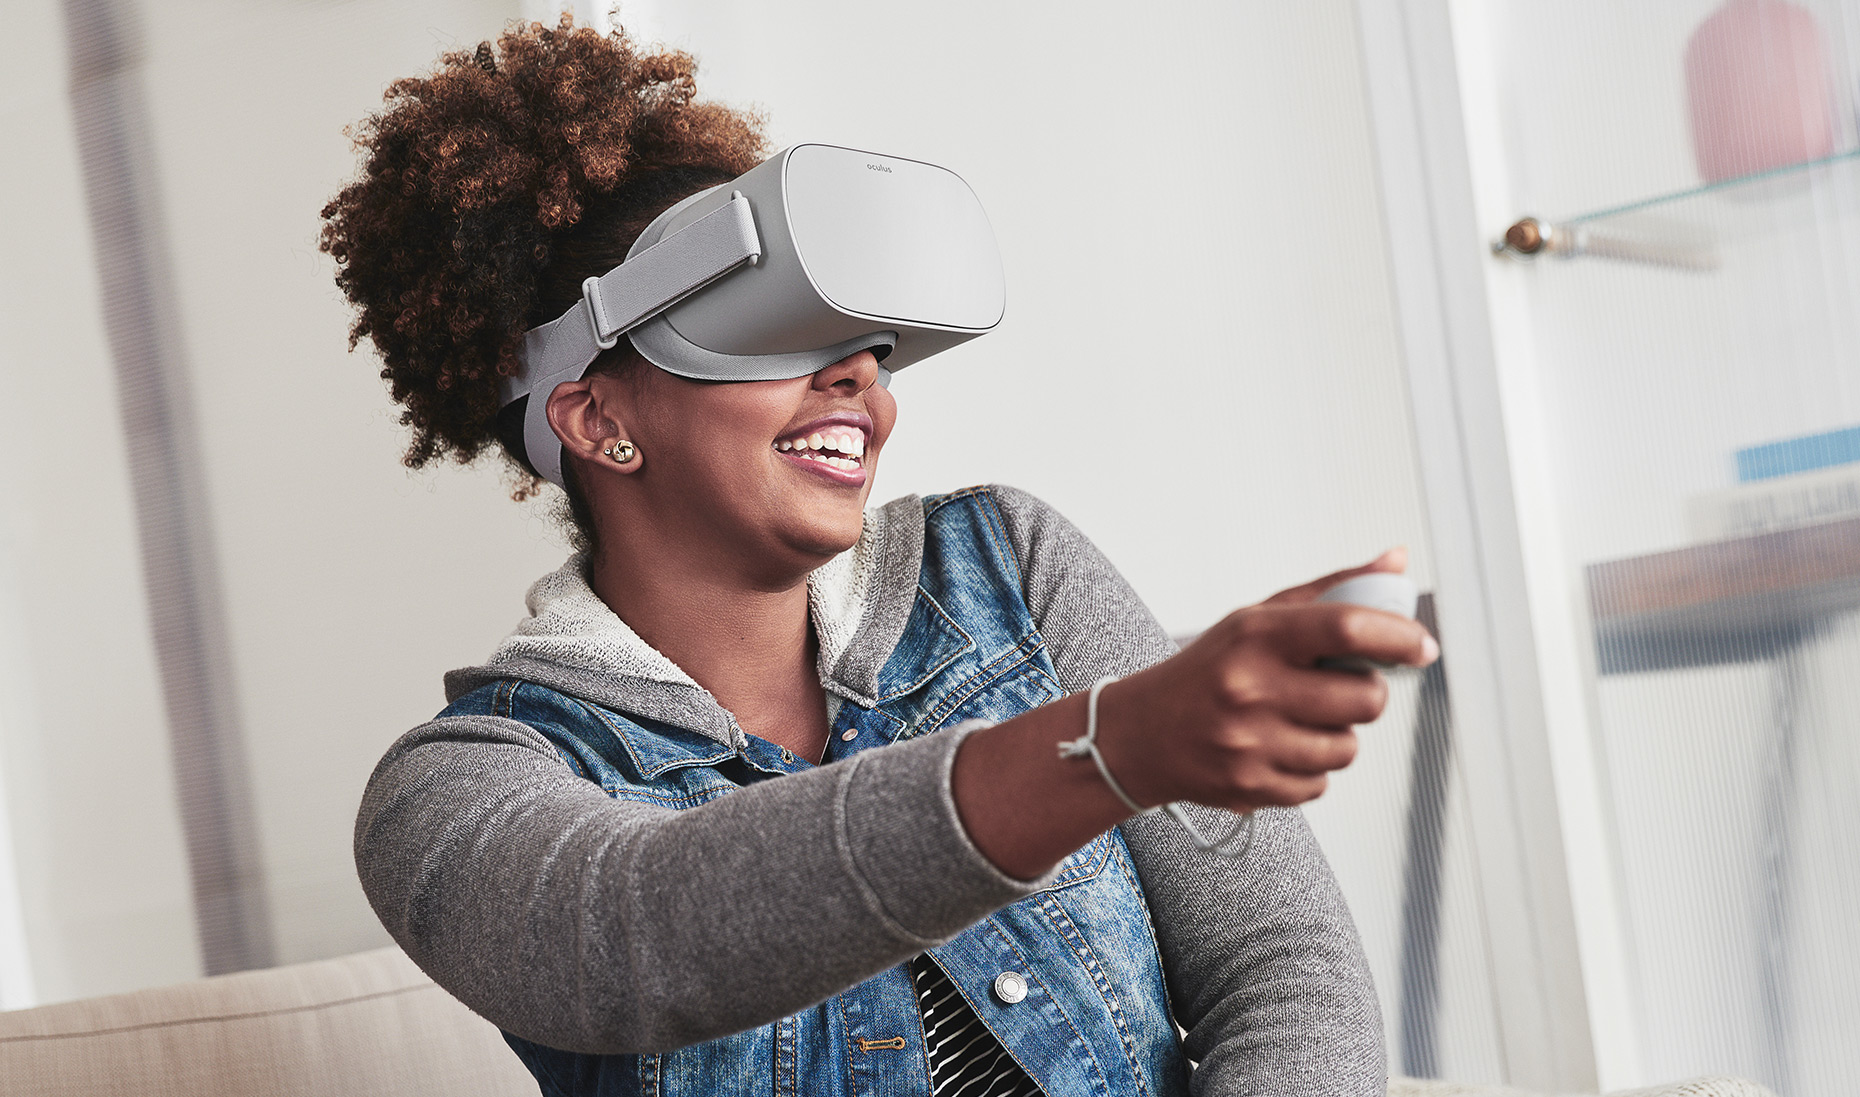 Oculus Go : Date de sortie, prix et specs du casque VR autonome